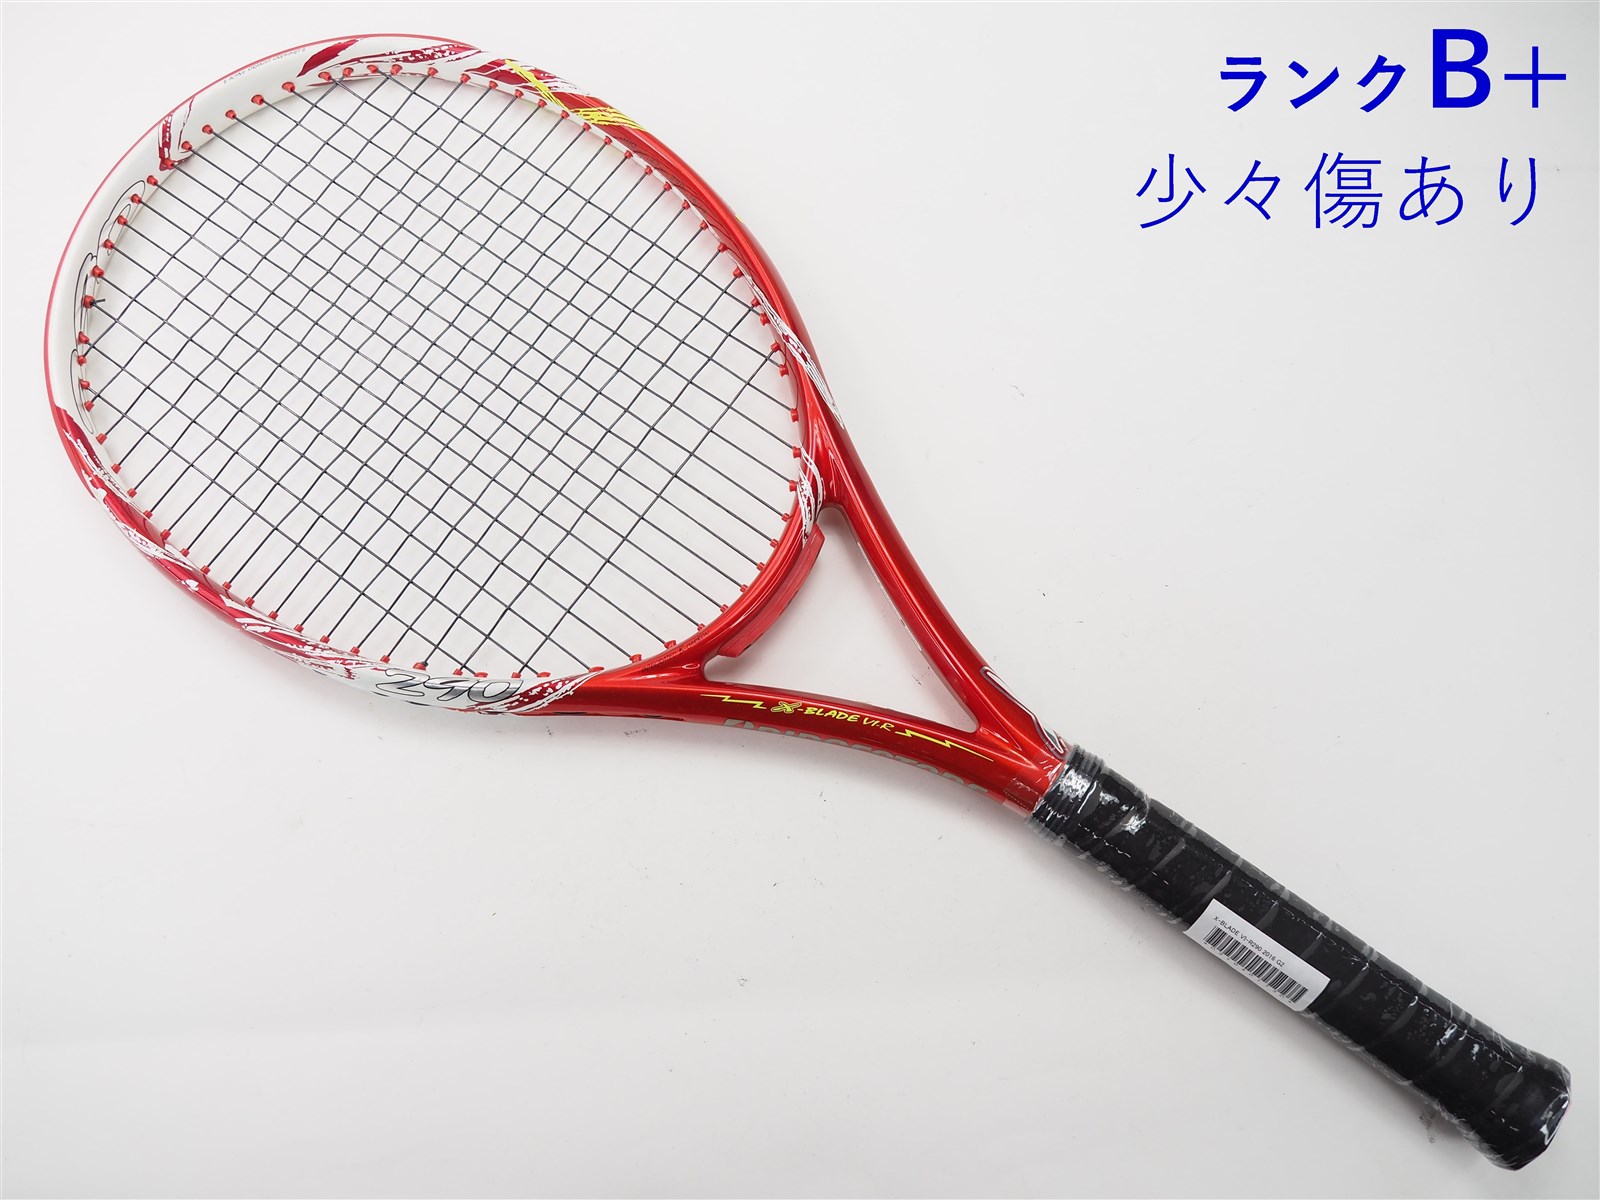 ブリヂストン テニスラケット エックスブレードBX300 G2 - ラケット(硬式用)